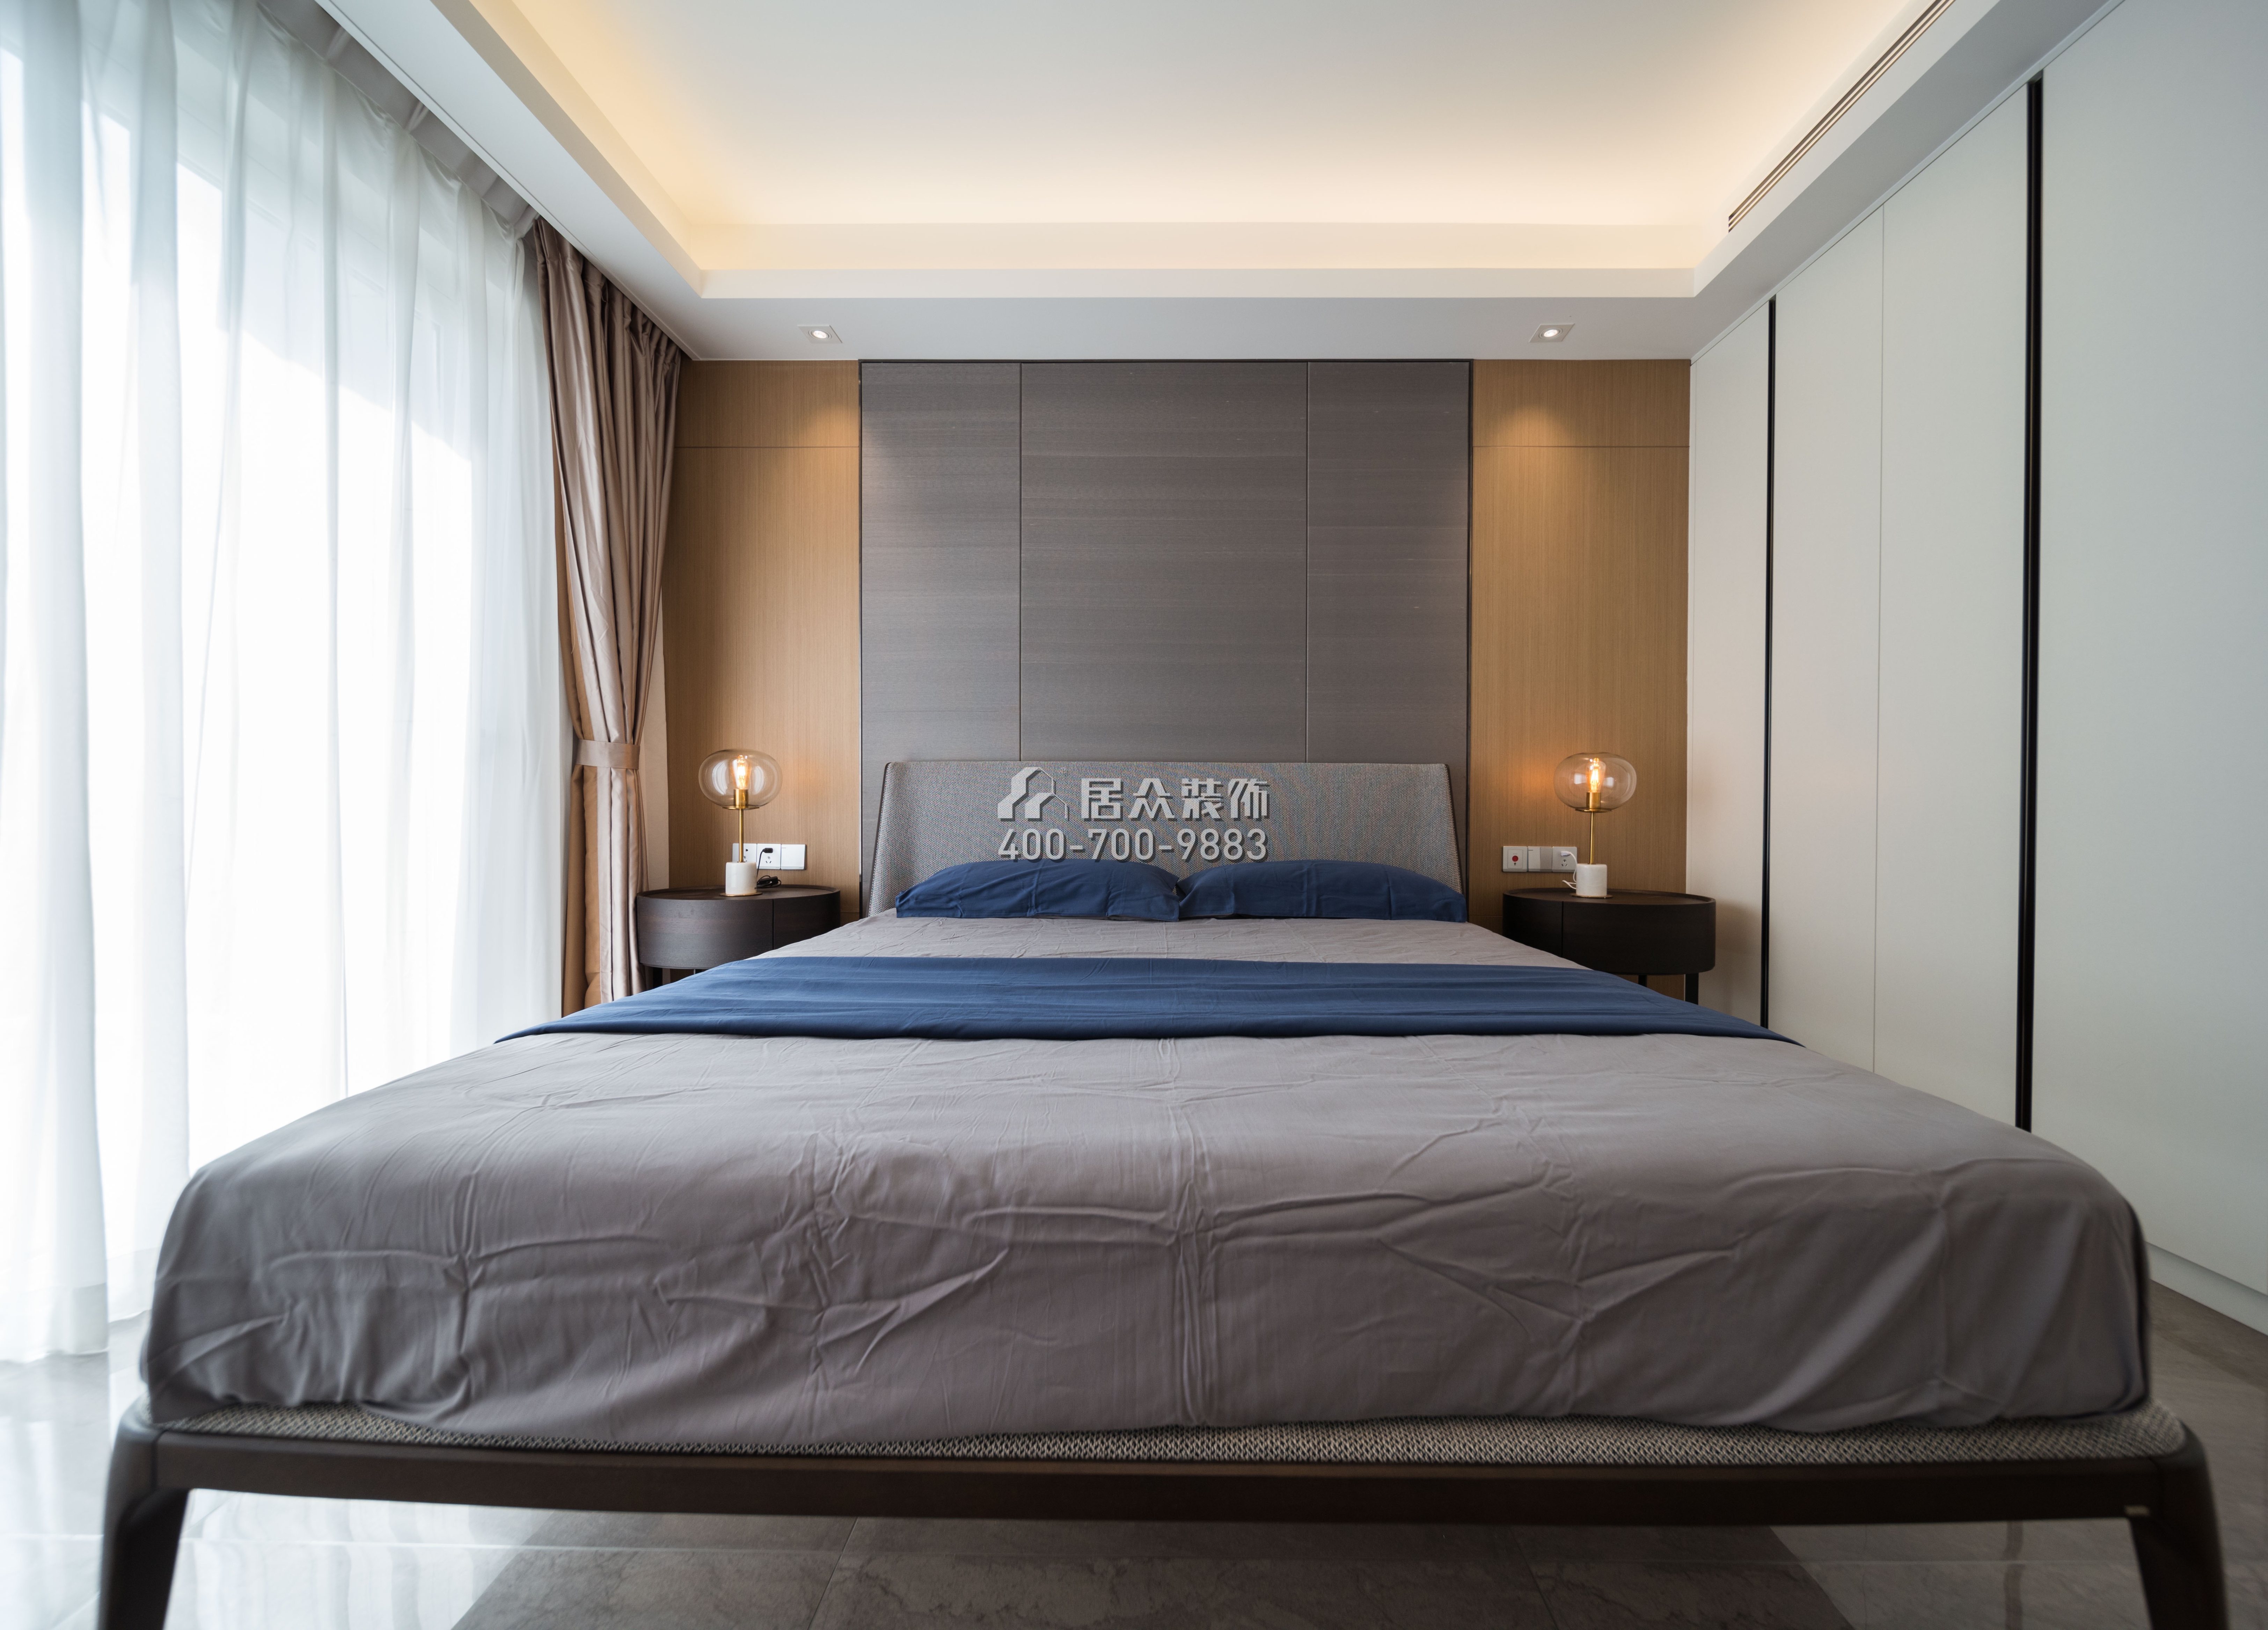 三湘海尚花园一期173平方米现代简约风格平层户型卧室装修效果图